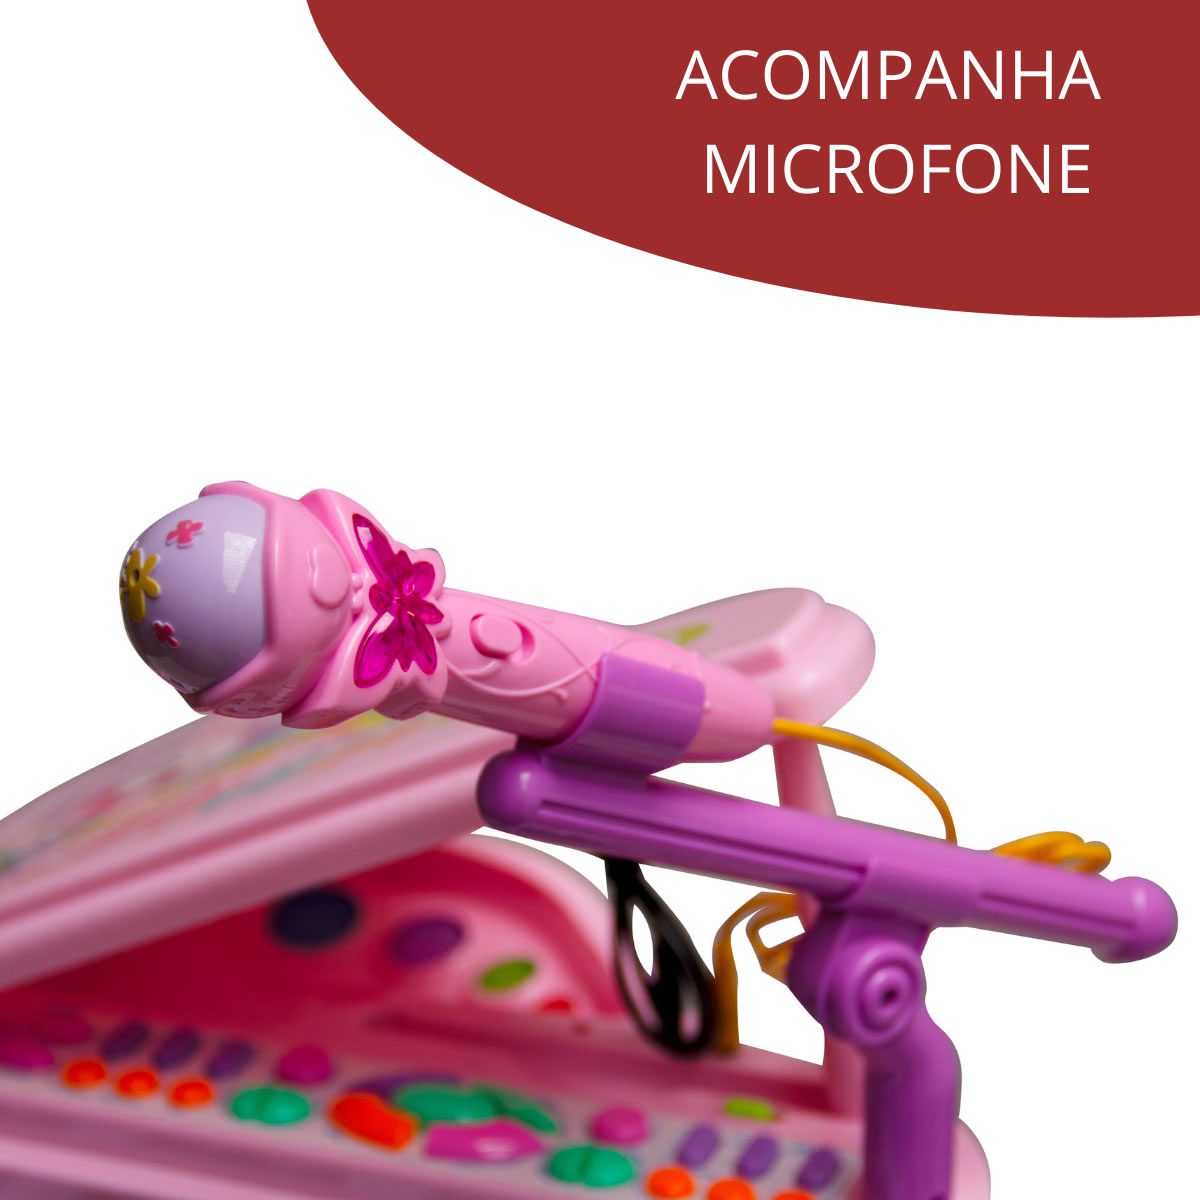 Piano Teclado Infantil com Microfone e Suporte Banquinho Importway